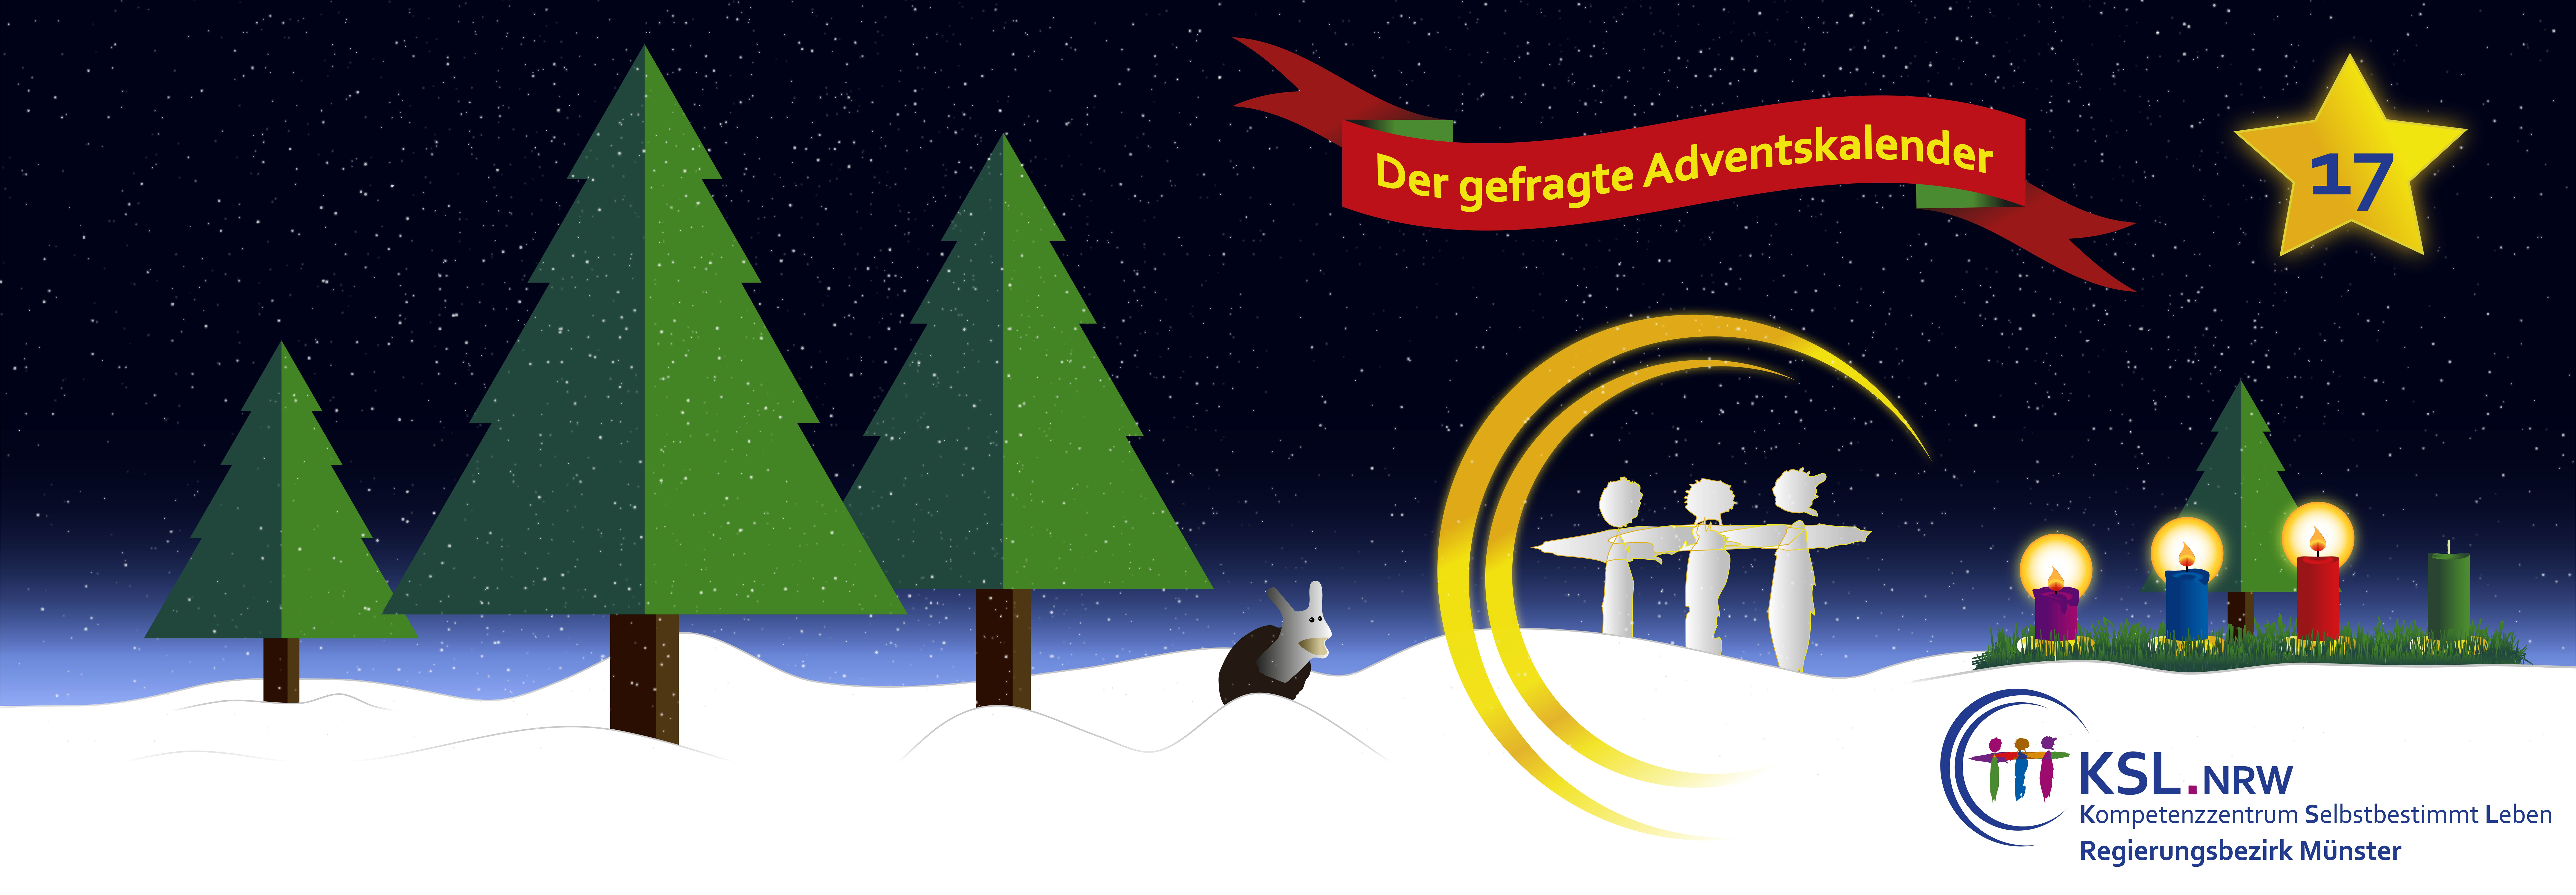 Der gefragte Adventskalender - KSL Münster - weihnachtlicher Hintergrund - vier Tannenbäume - ein Stern mit der Nummer 17 - ein Adventskranz mit vier Kerzen